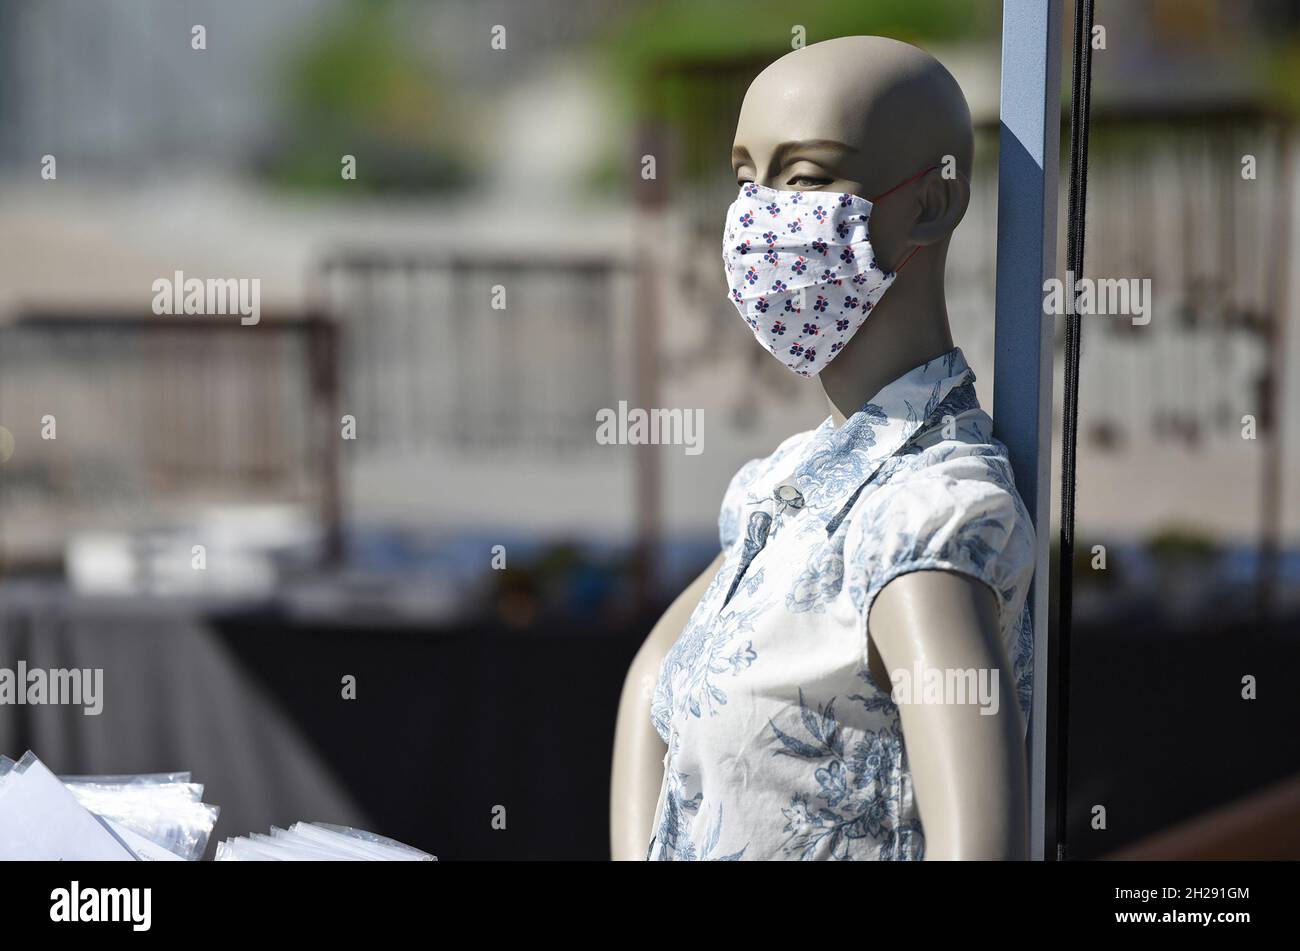 Mund-Nasen-Schutz Maske auf einer Schaufensterpuppe in Österreich, Europa - Mouth and nose protection mask on a mannequin in Austria, Europe Stock Photo